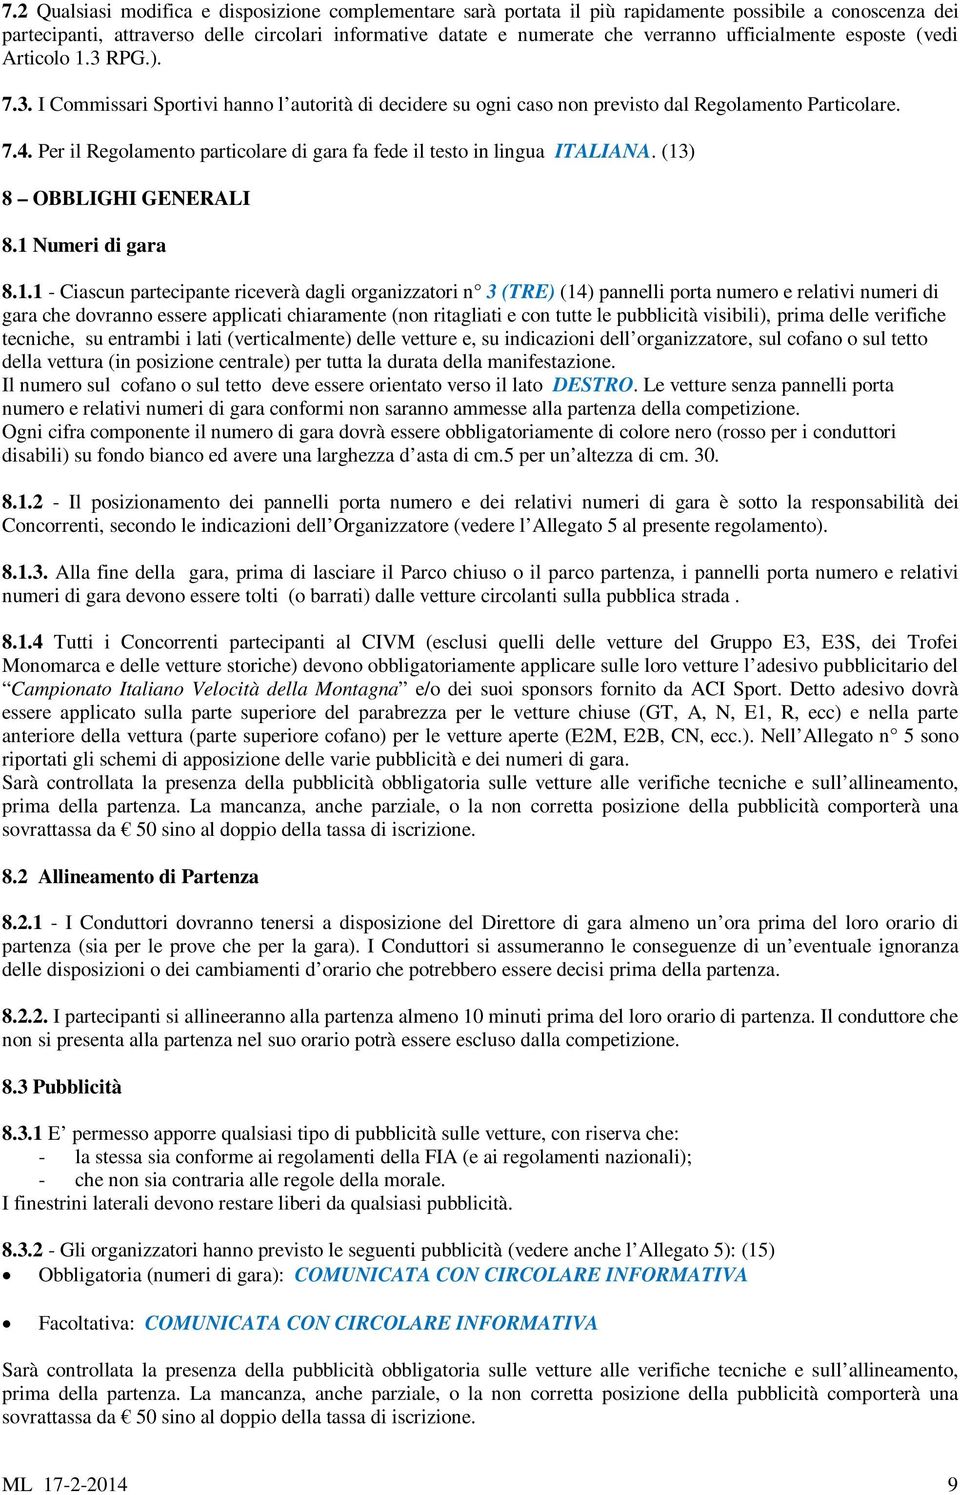 Per il Regolamento particolare di gara fa fede il testo in lingua ITALIANA. (13